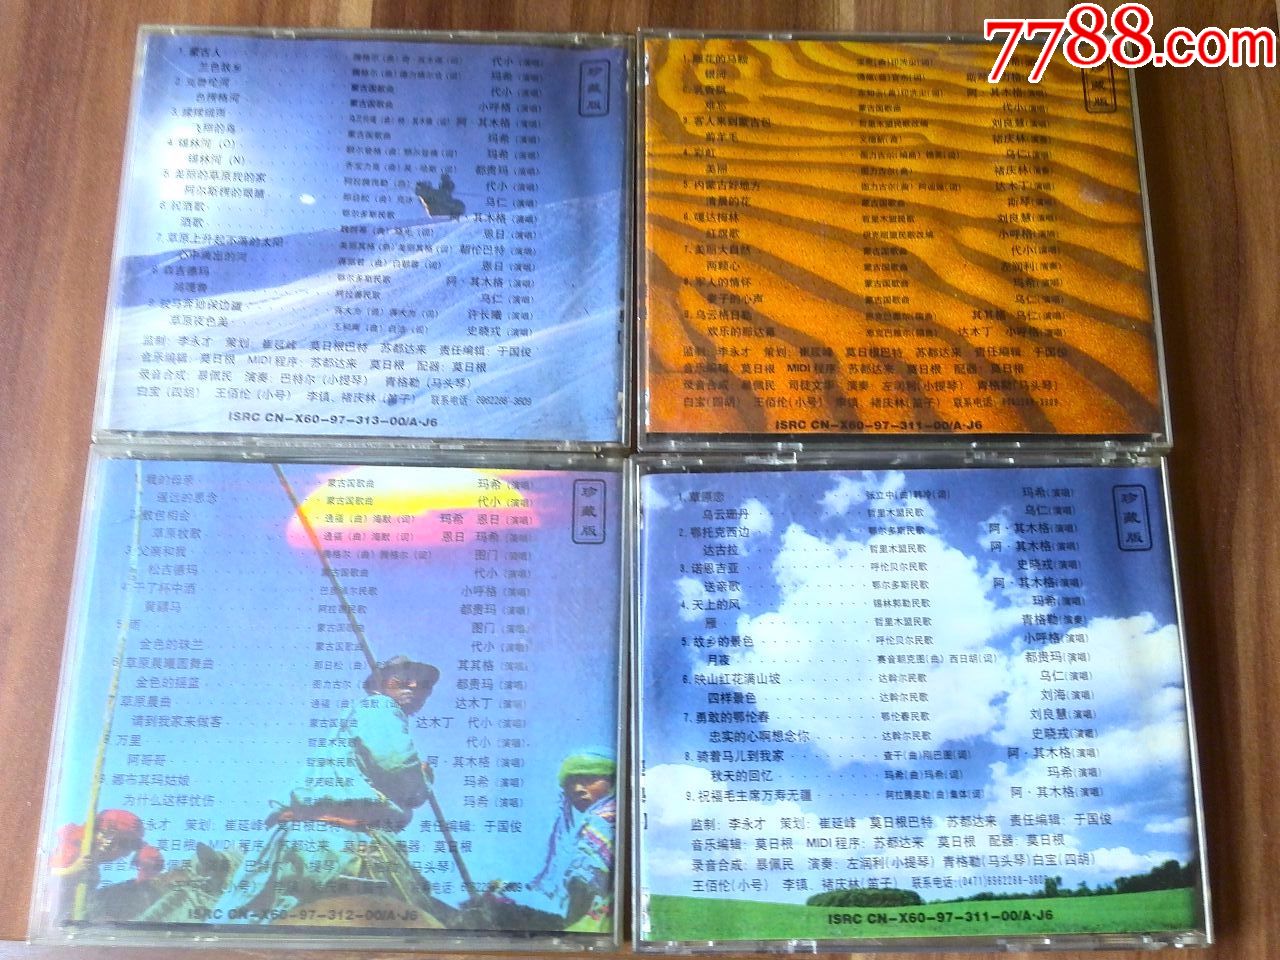 蒙古族民歌经典大全专辑《草原上的歌》(1,2,3